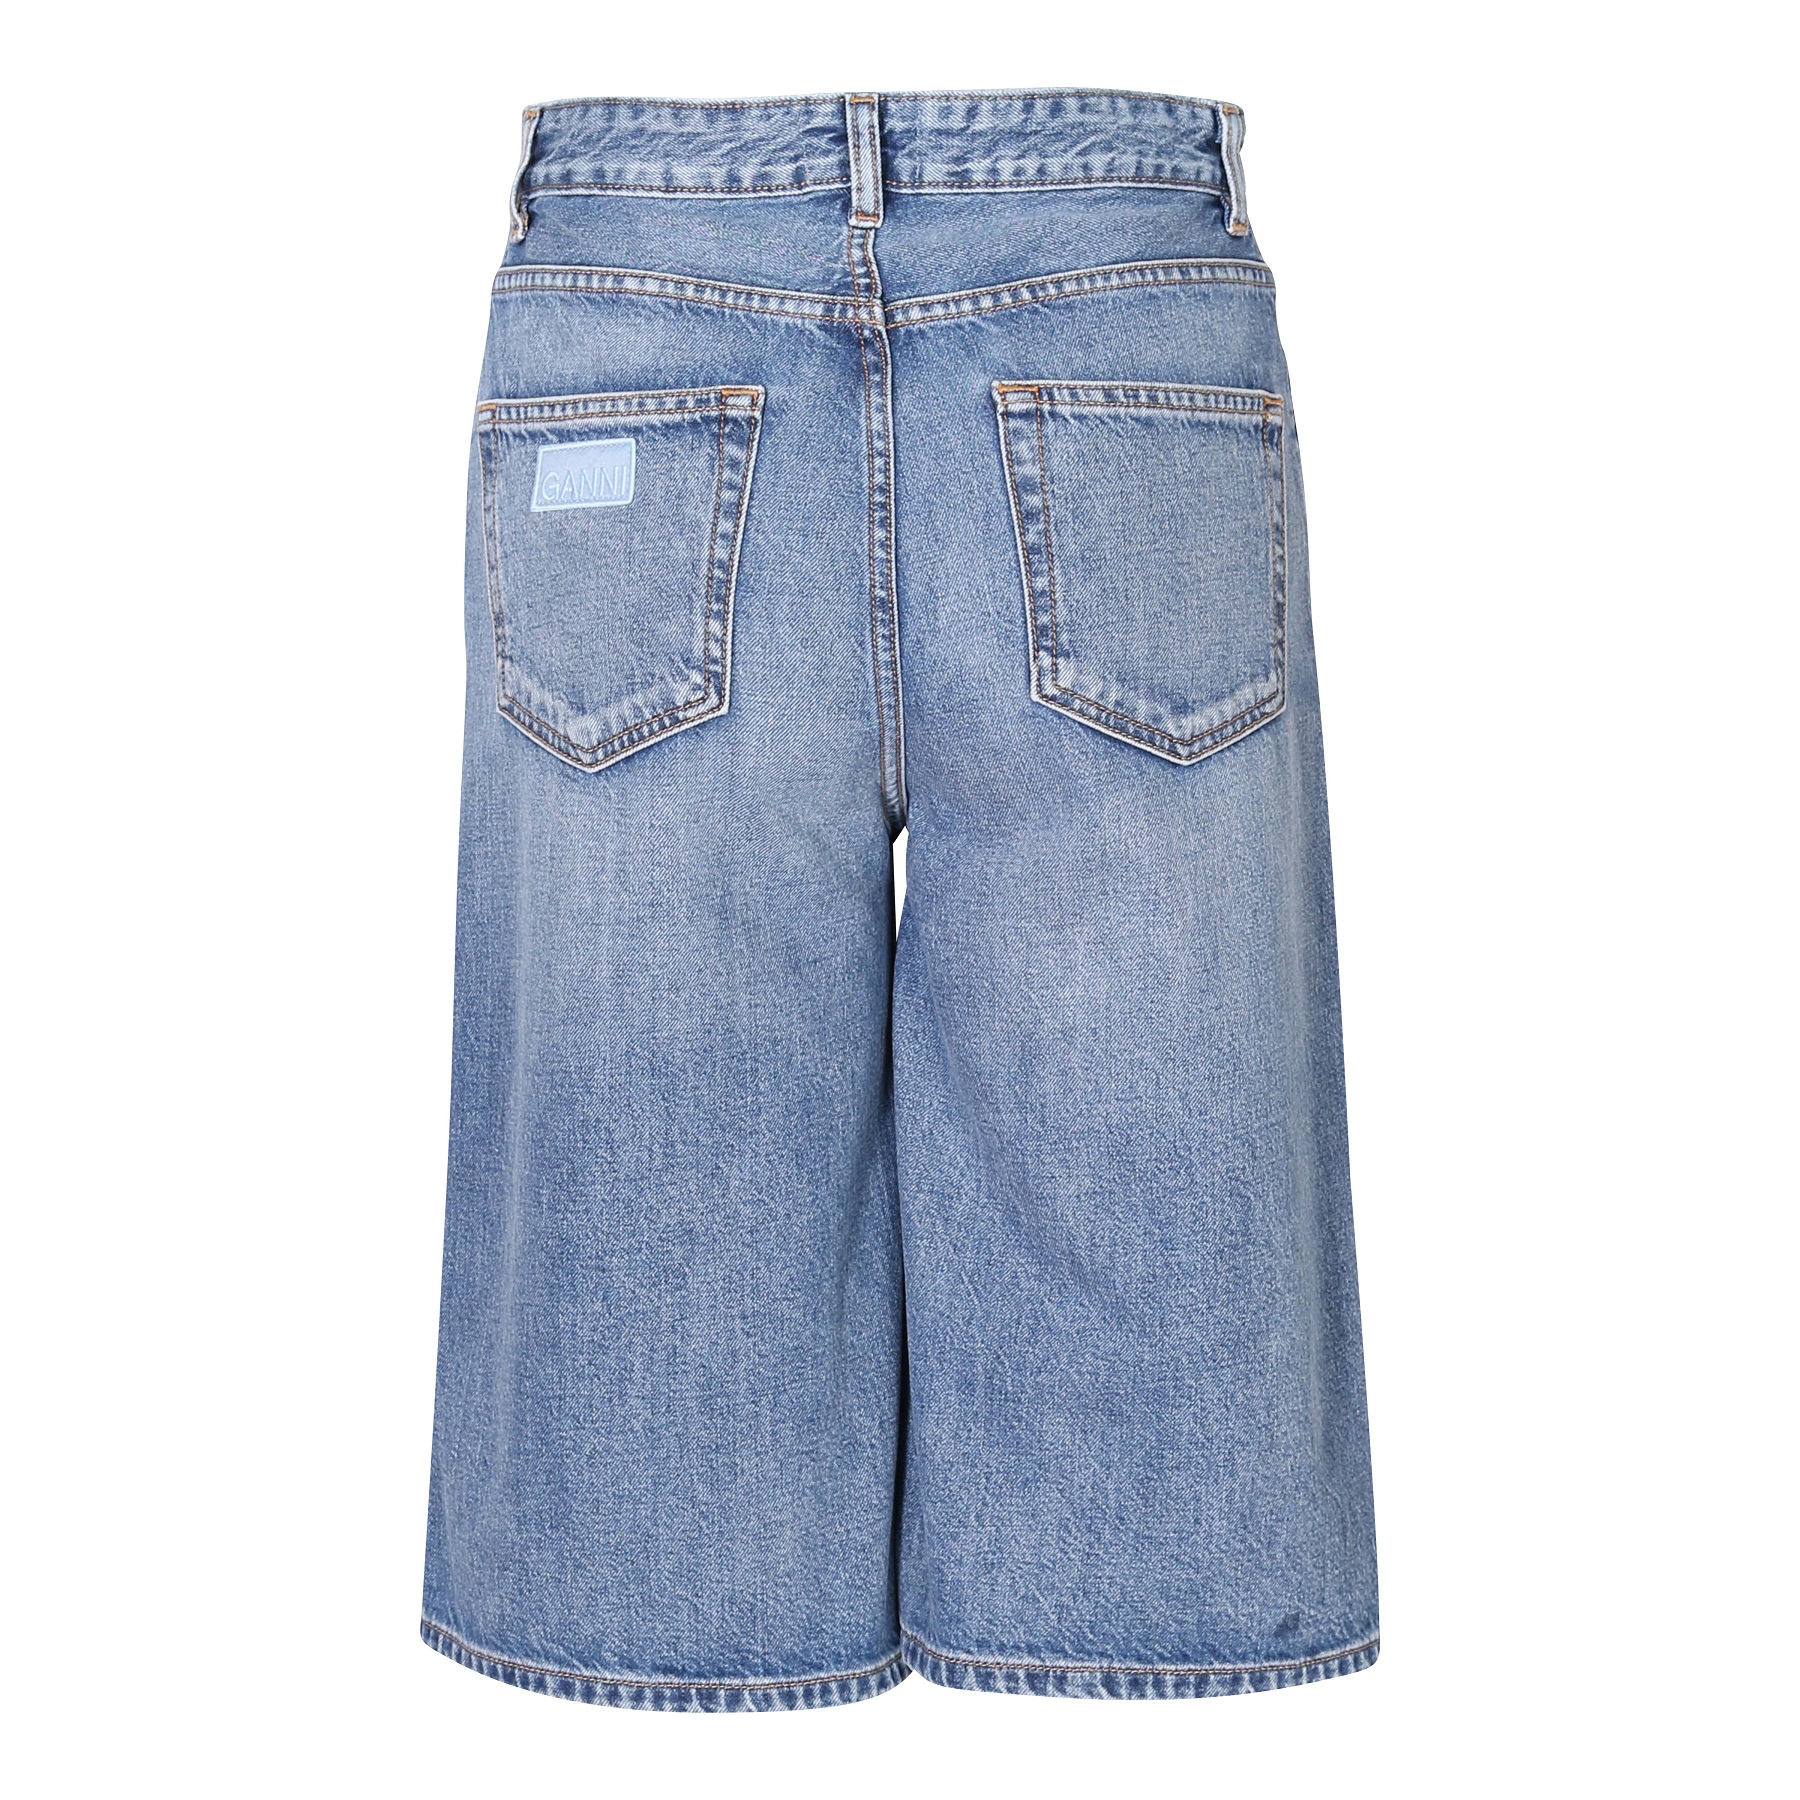 GANNI Vintage Washed Denim Wide Shorts 28